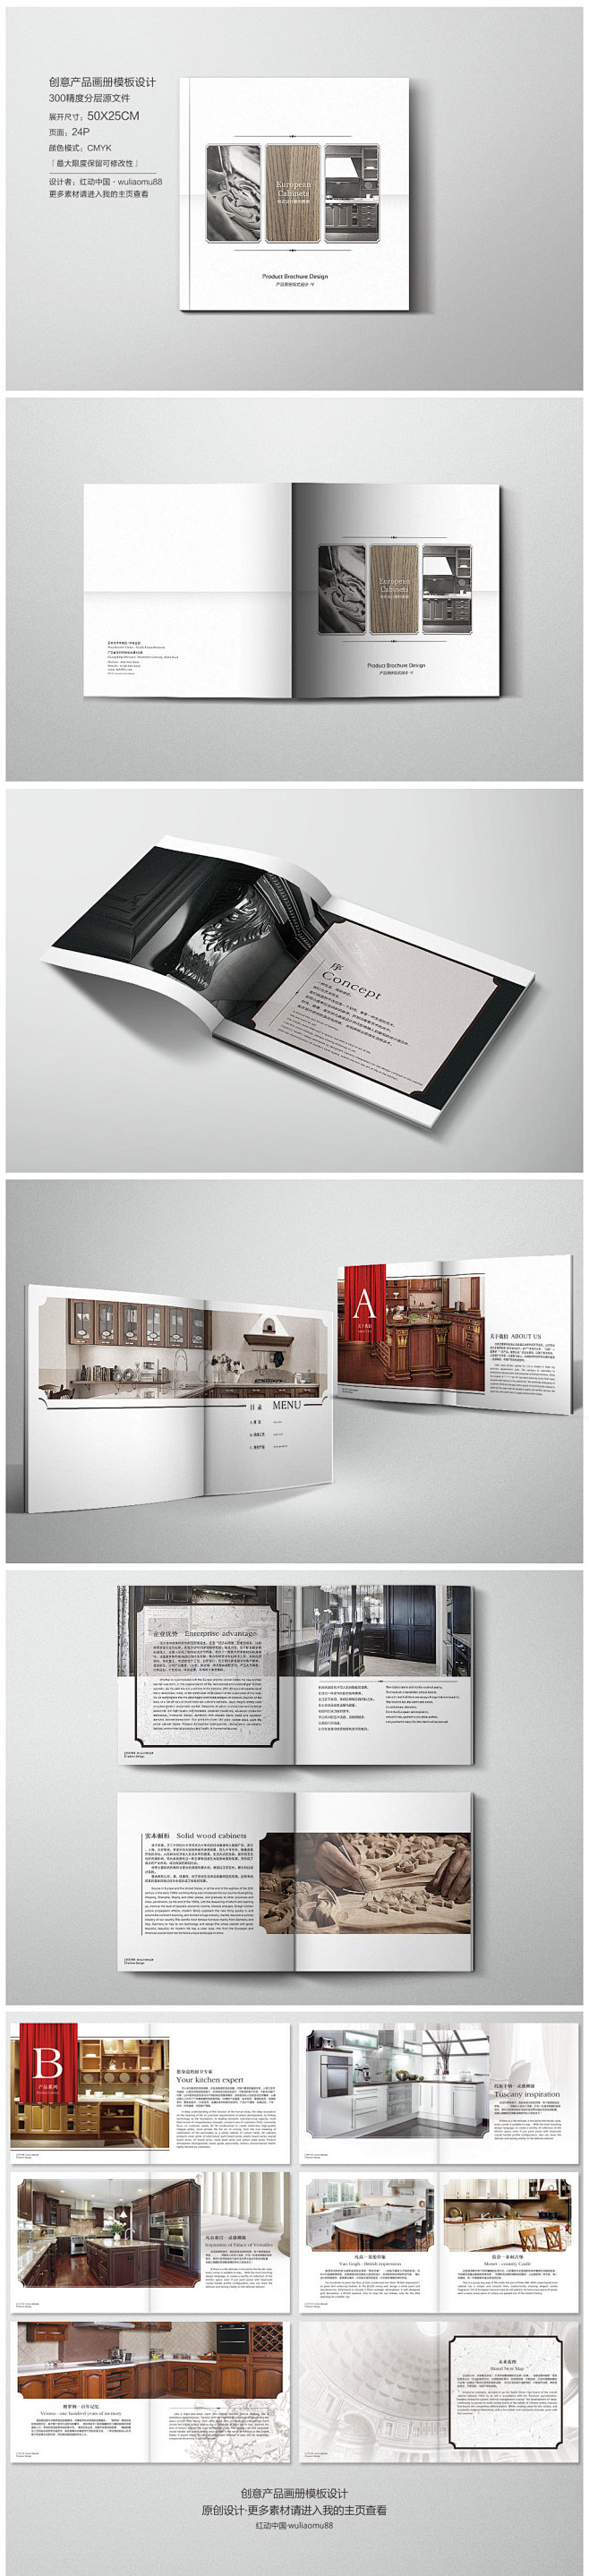 创意画册 时尚画册 画册设计 企业画册 ...